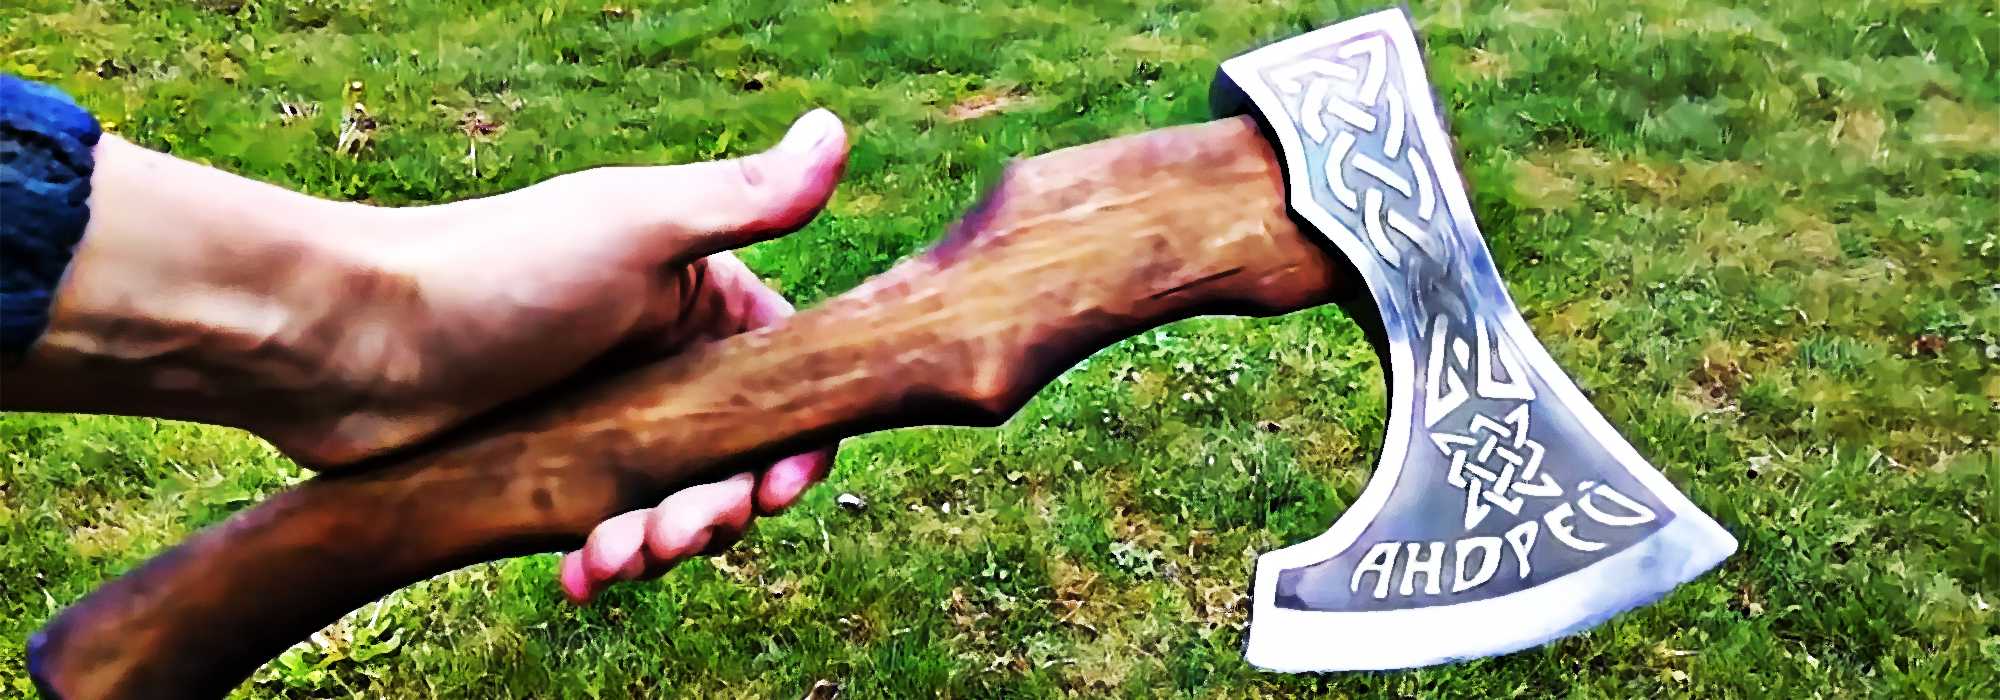 Топор викингов своими руками: обработка ржавого топора, придание формы, нанесение рисунка и травление